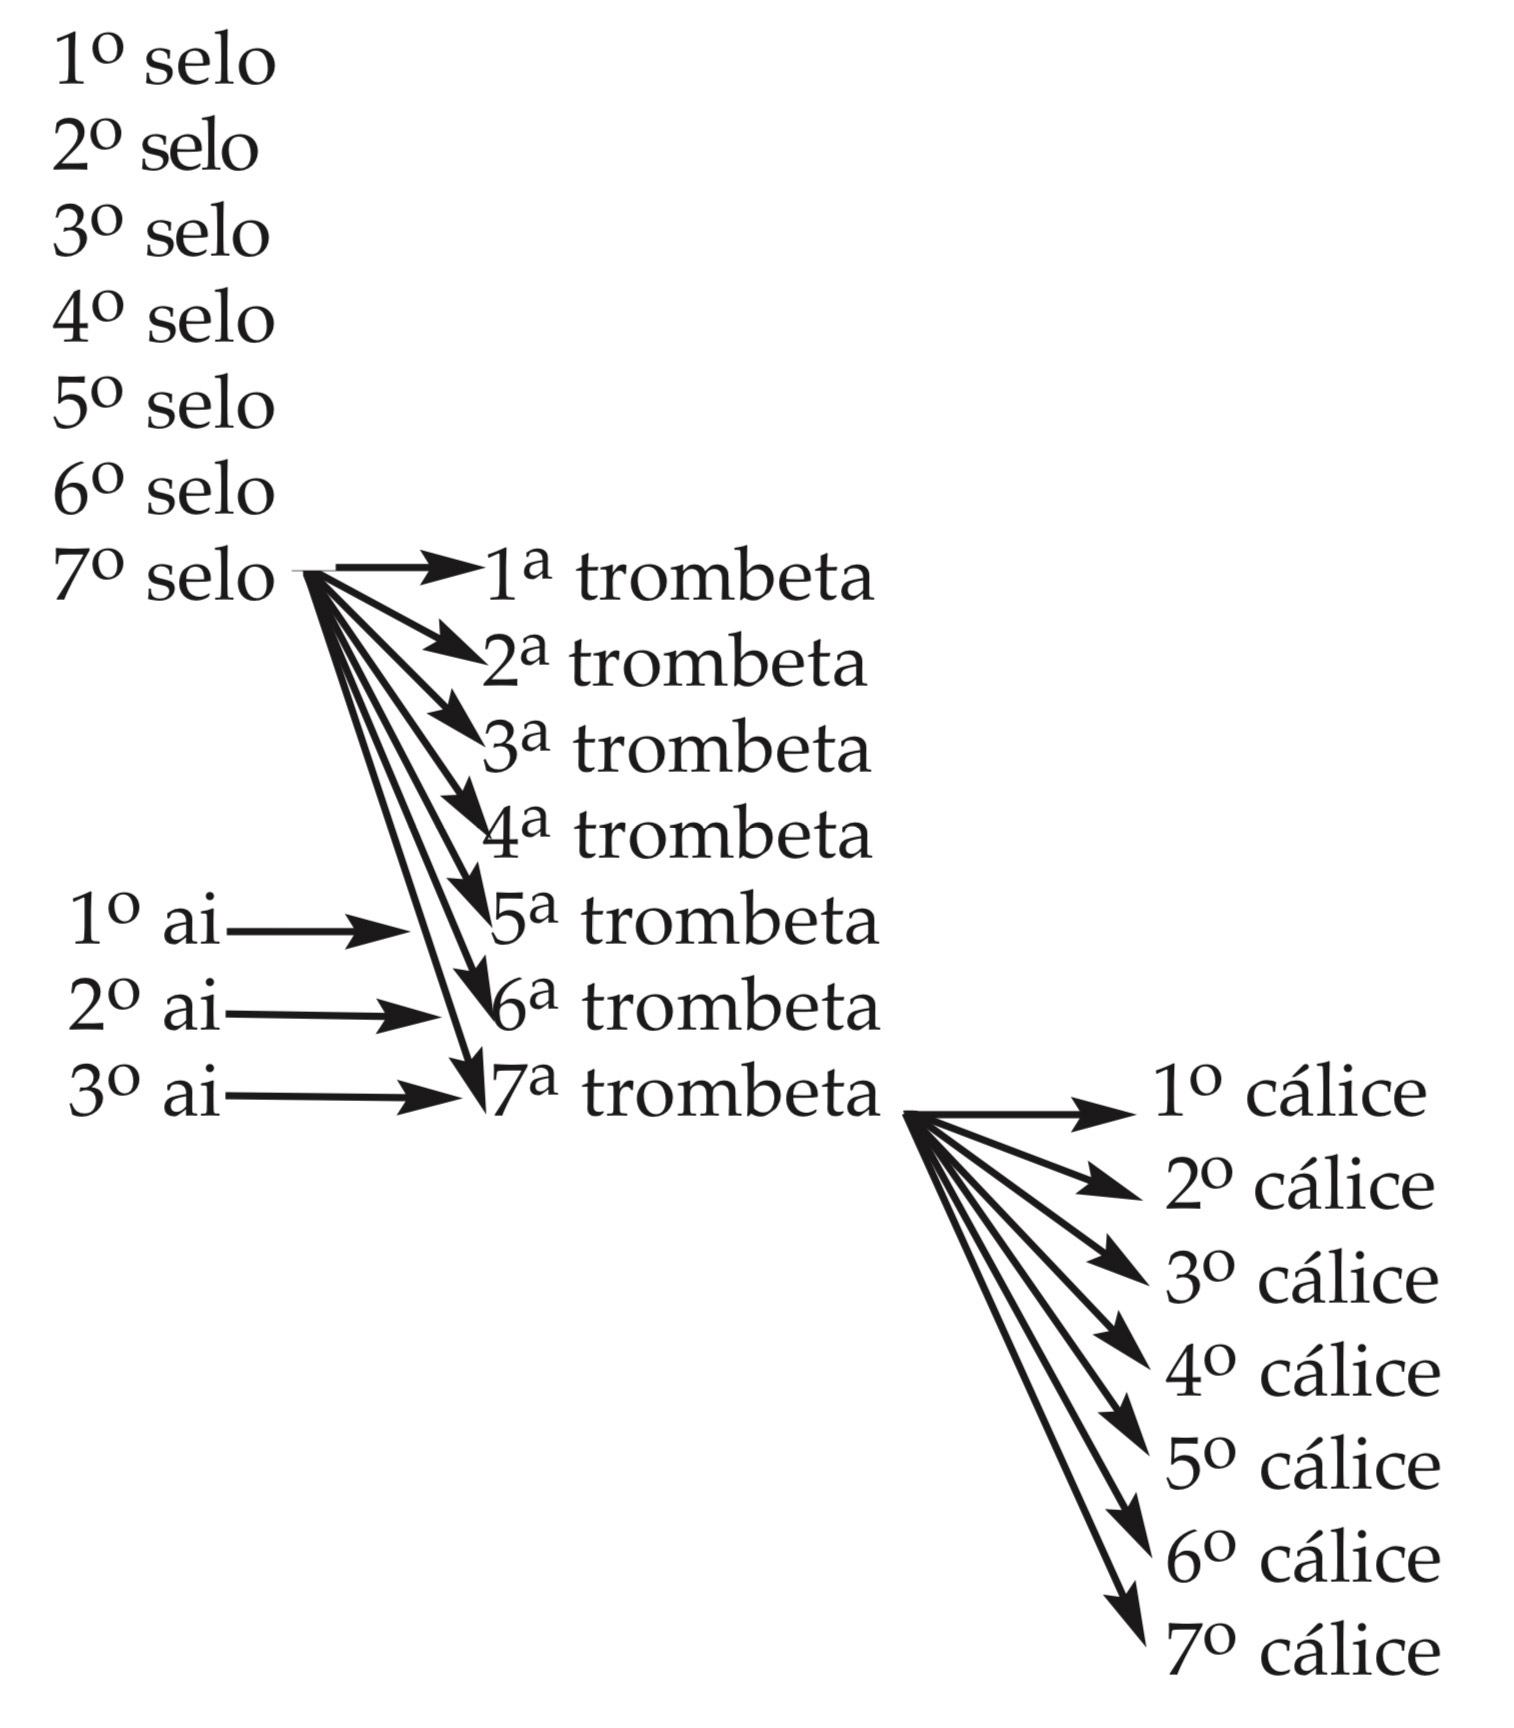 Grafico dos trombetas e selos de Apocalipse